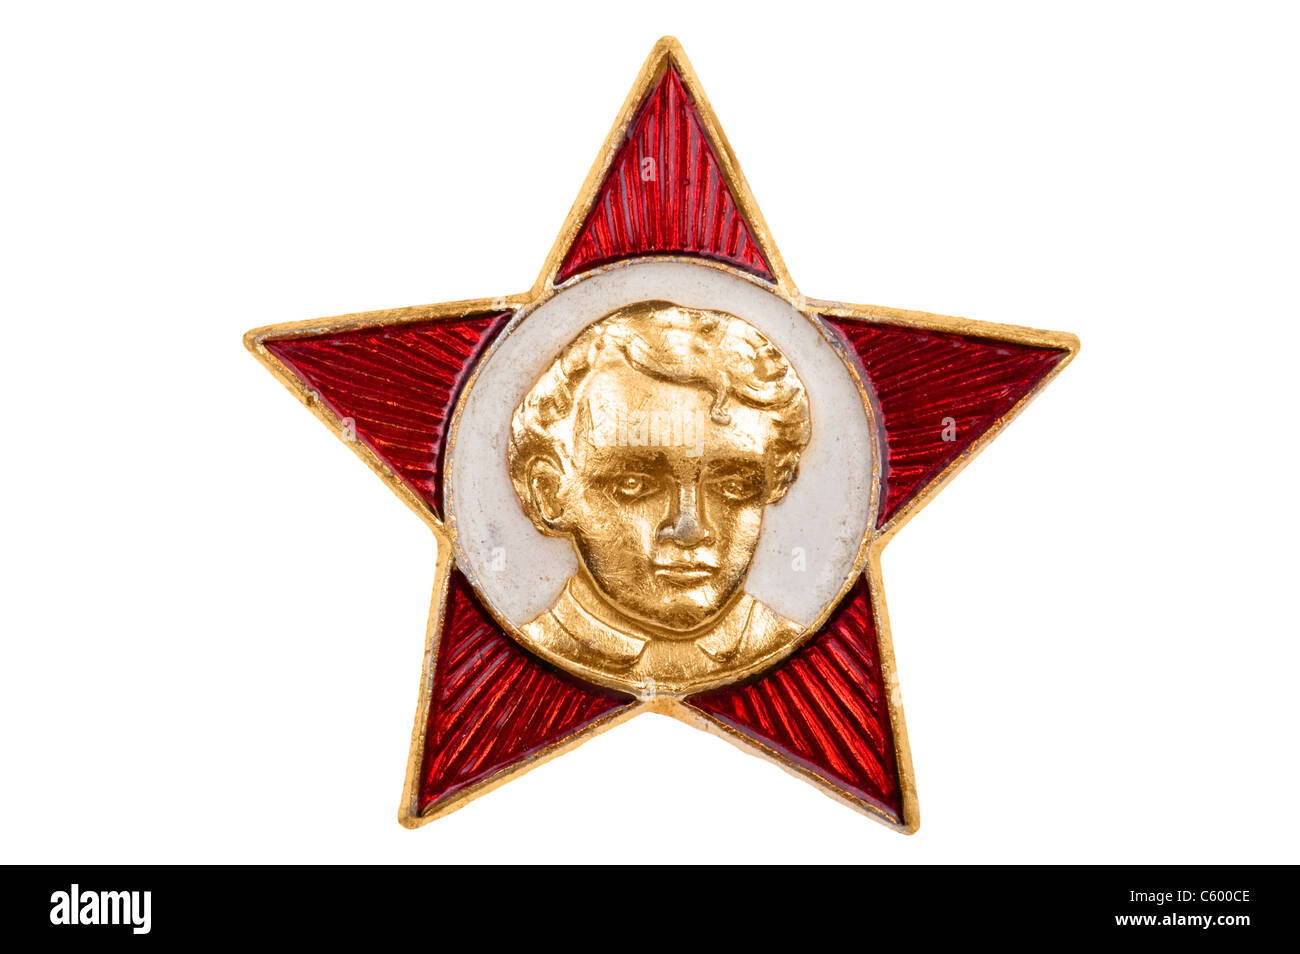 Objet sur blanc - badge soviétique avec Lénine Banque D'Images